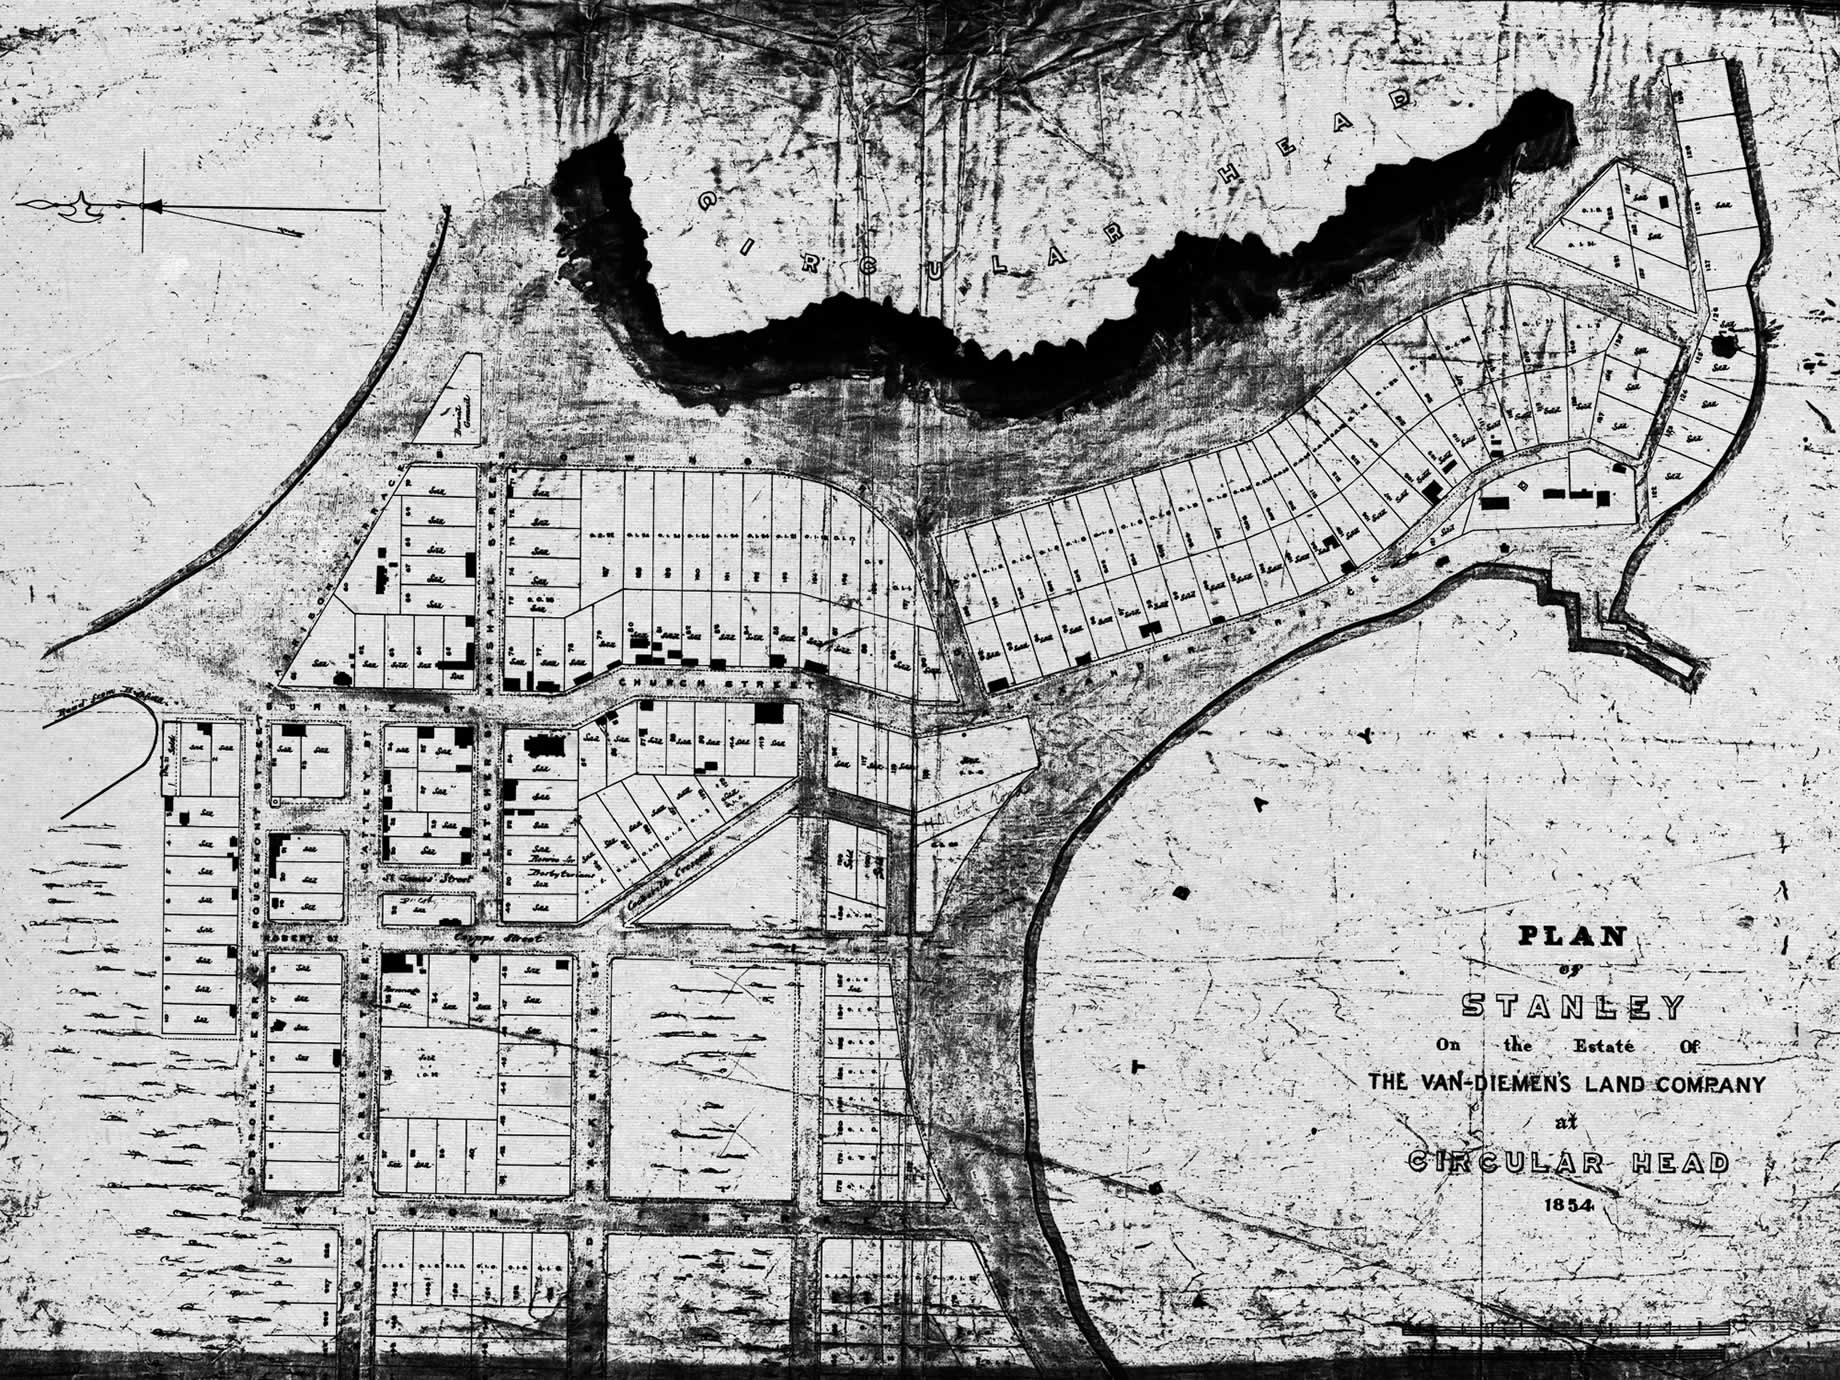 Le plan de Stanley fait par John Lee Archer concernant les propriétés de la Van Diemen’s Land Company à Circular Head, 1854